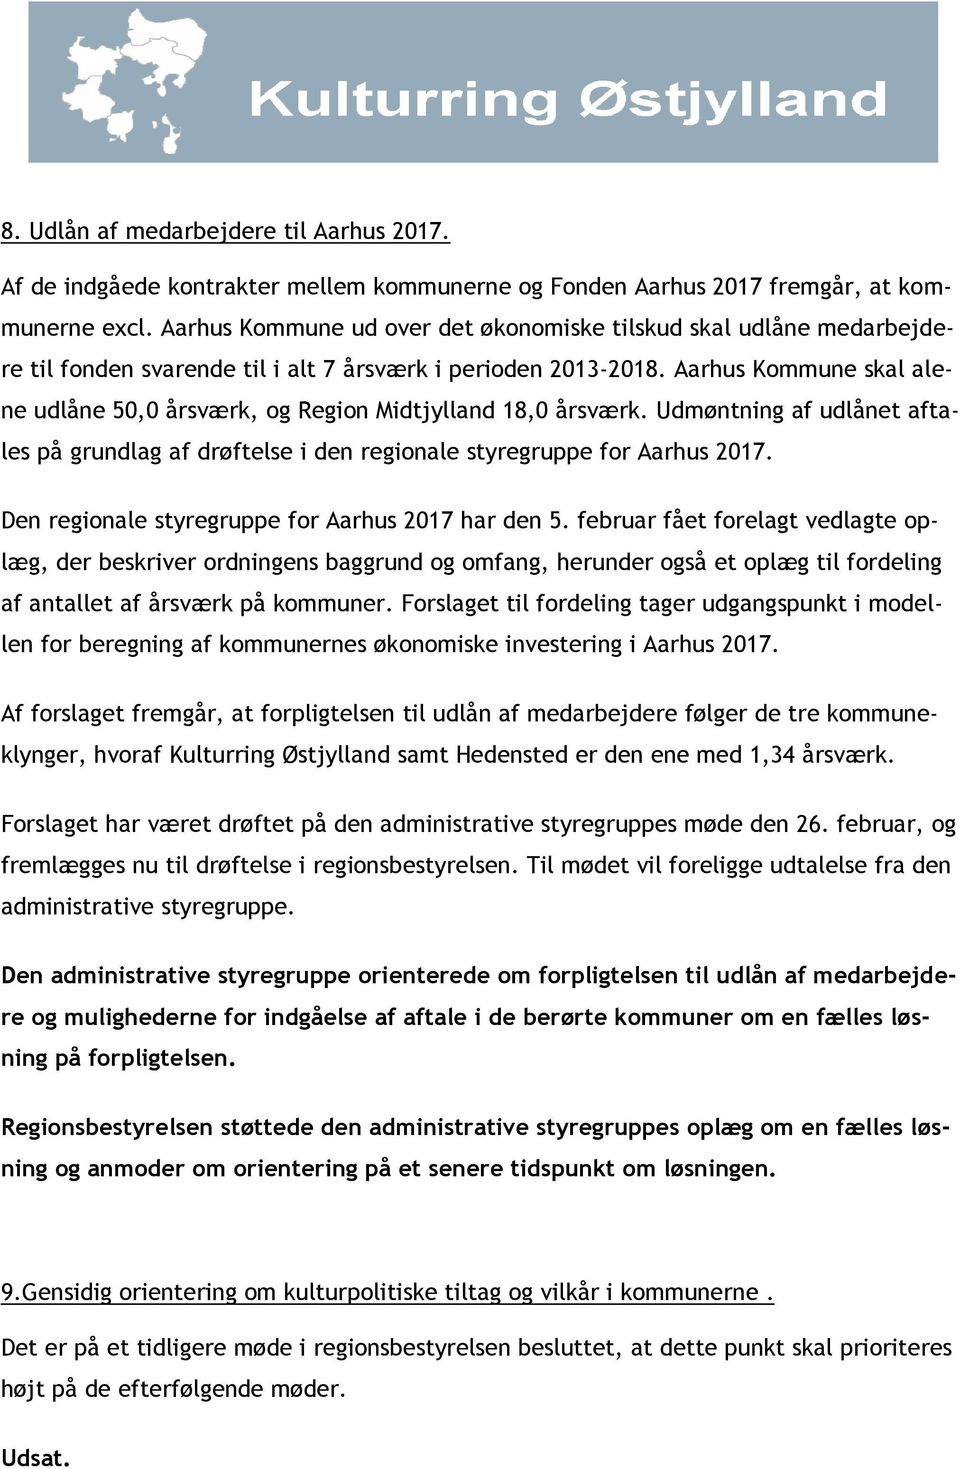 Aarhus Kommune skal alene udlåne 50,0 årsværk, og Region Midtjylland 18,0 årsværk. Udmøntning af udlånet aftales på grundlag af drøftelse i den regionale styregruppe for Aarhus 2017.